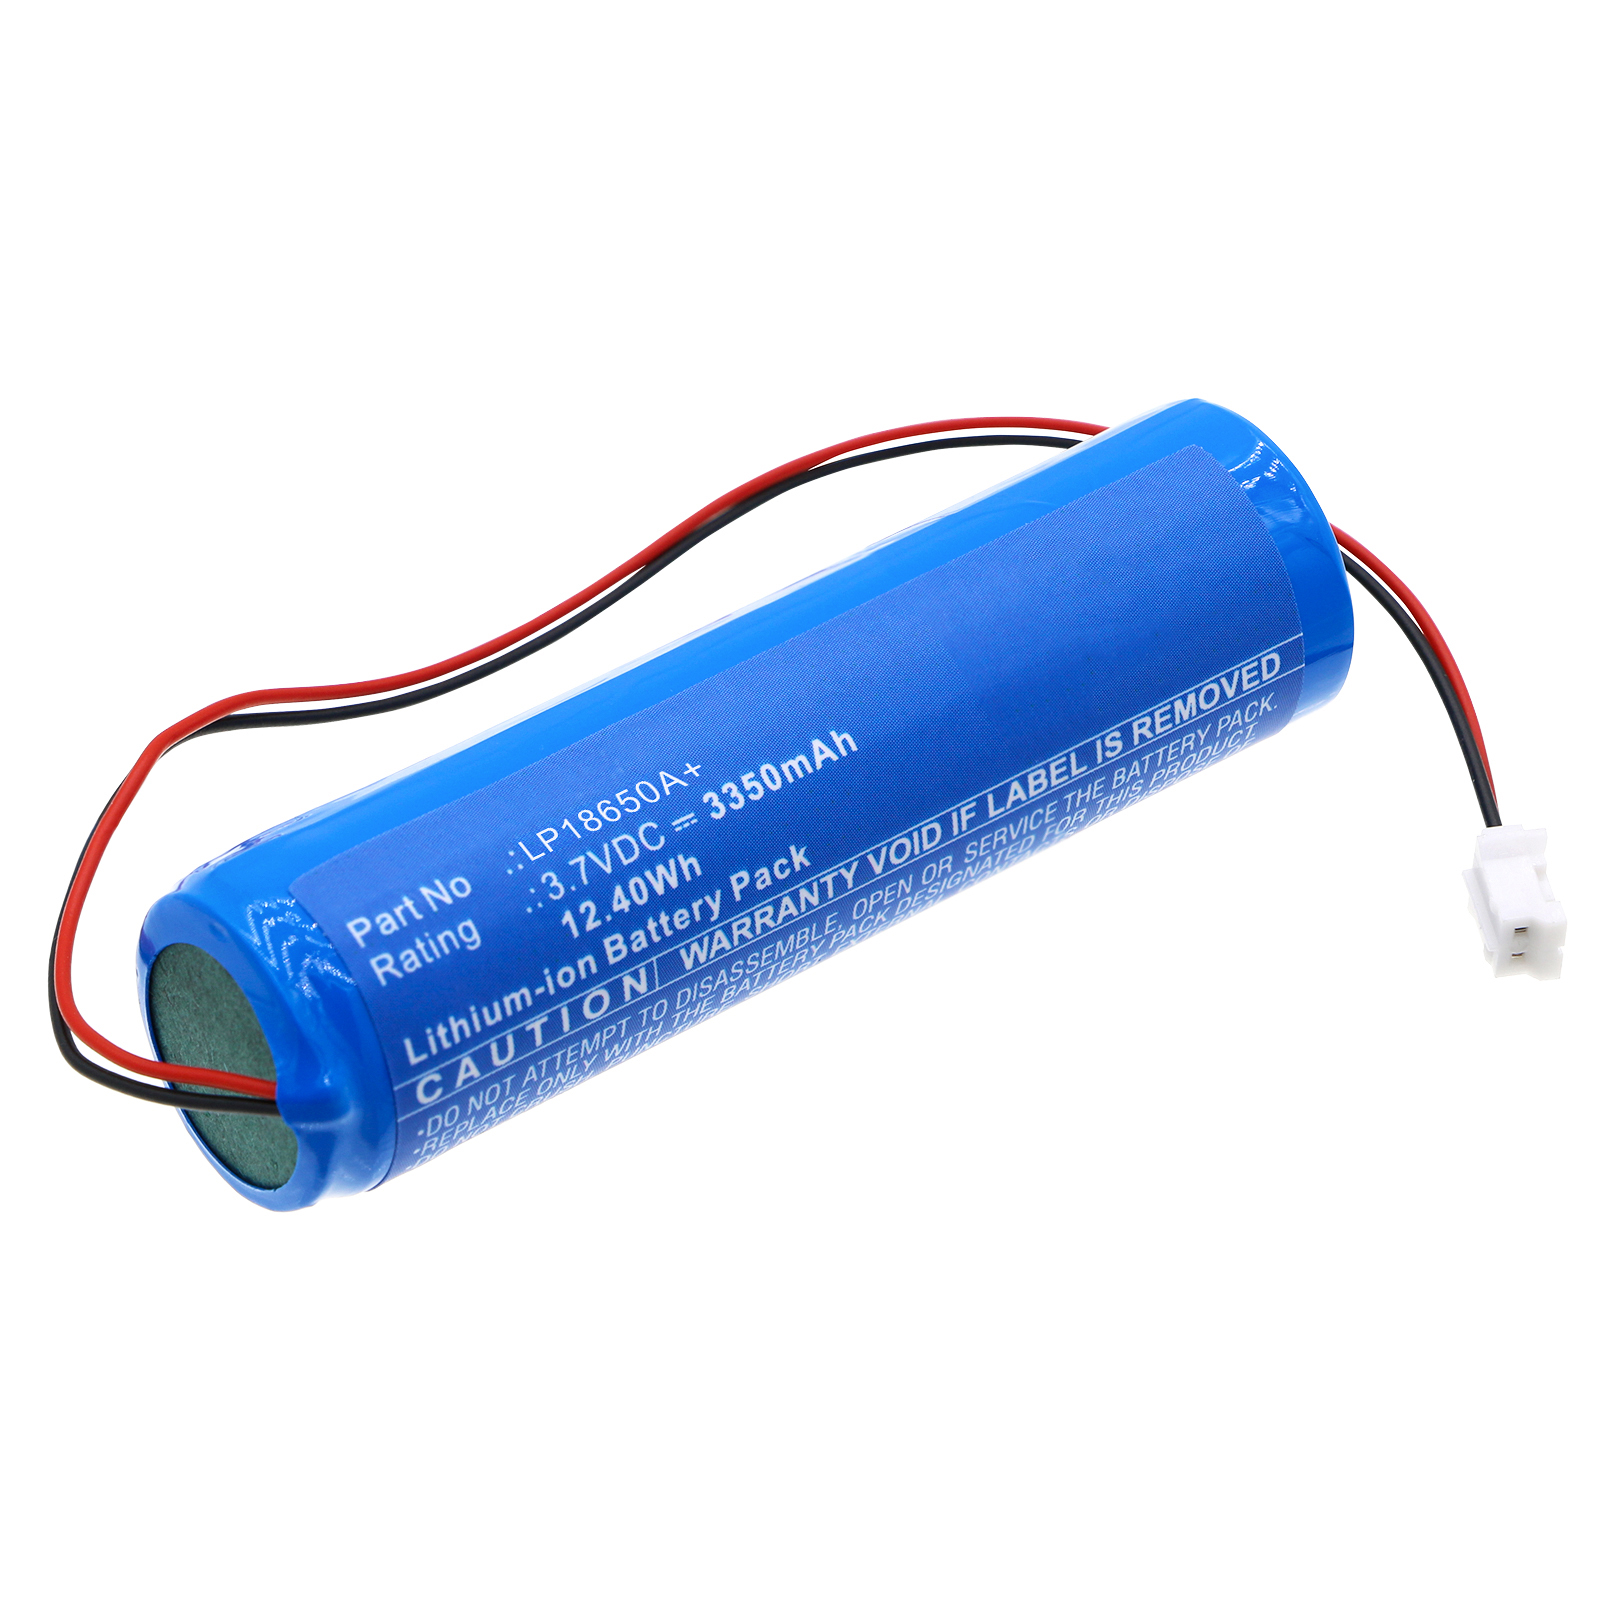 Batteries for DragerEquipment